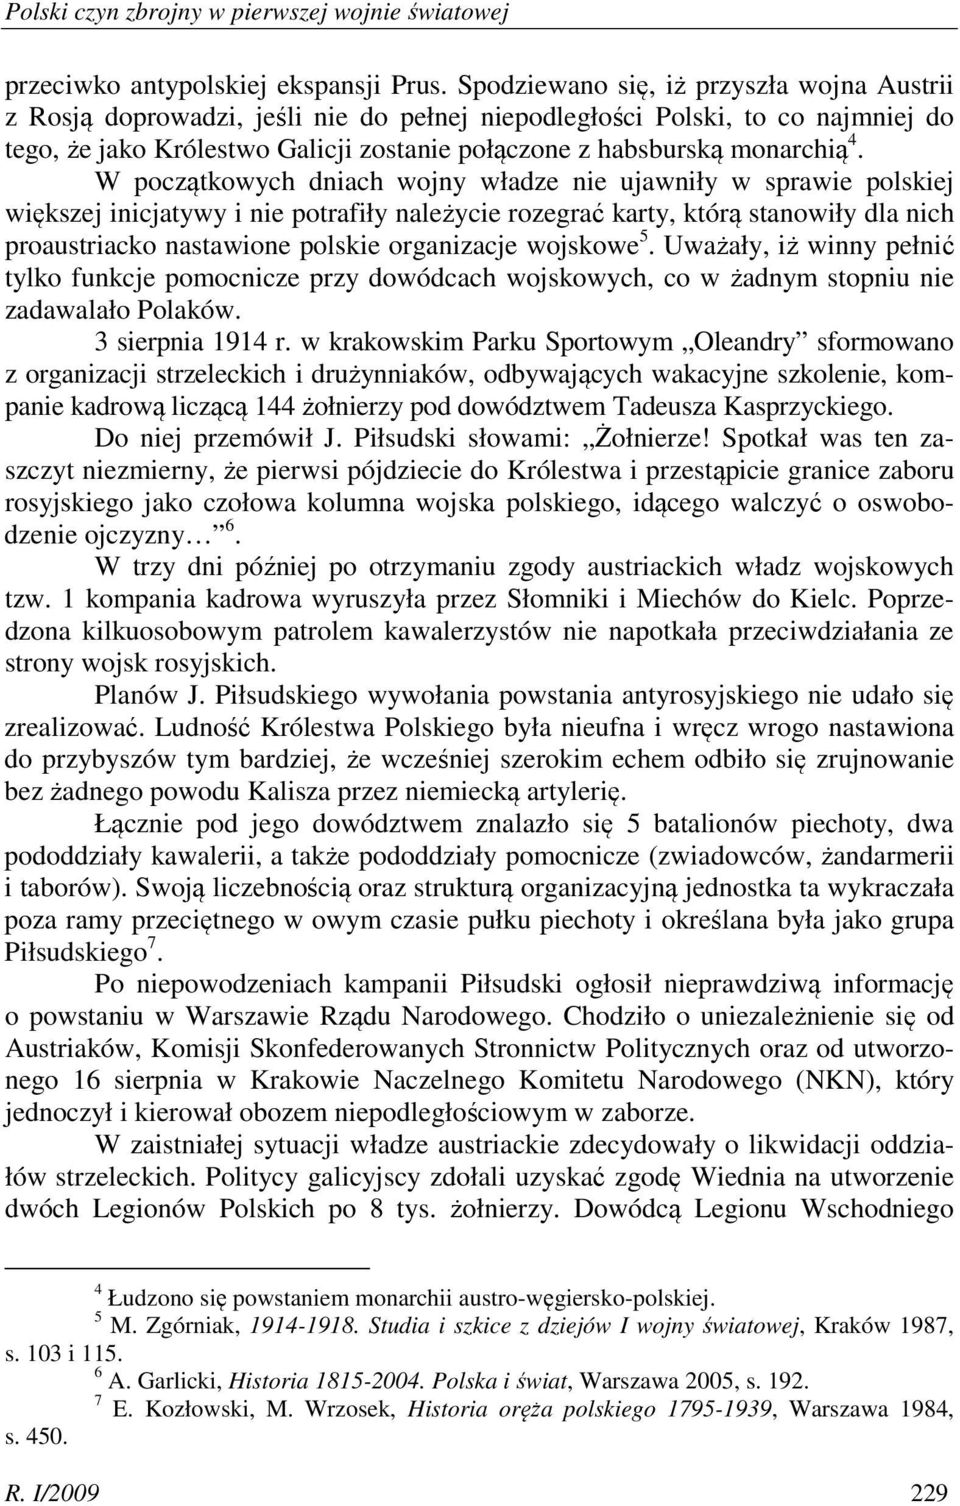 W początkowych dniach wojny władze nie ujawniły w sprawie polskiej większej inicjatywy i nie potrafiły należycie rozegrać karty, którą stanowiły dla nich proaustriacko nastawione polskie organizacje